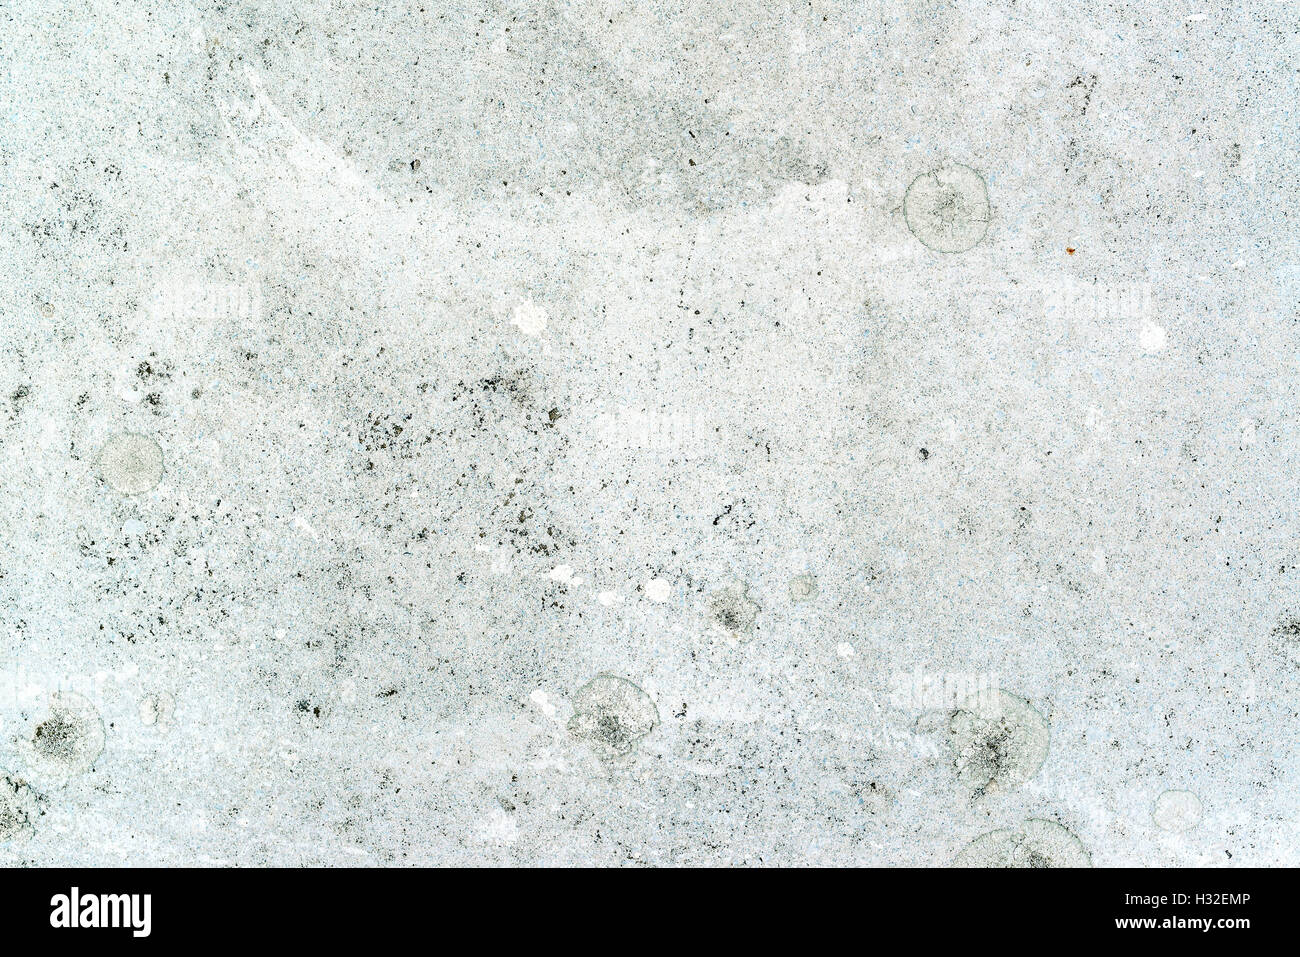 Grunge texture di calcestruzzo, vernice bianca sulla superficie di pavimentazione con residui di sporco e macchie come sfondo astratto Foto Stock